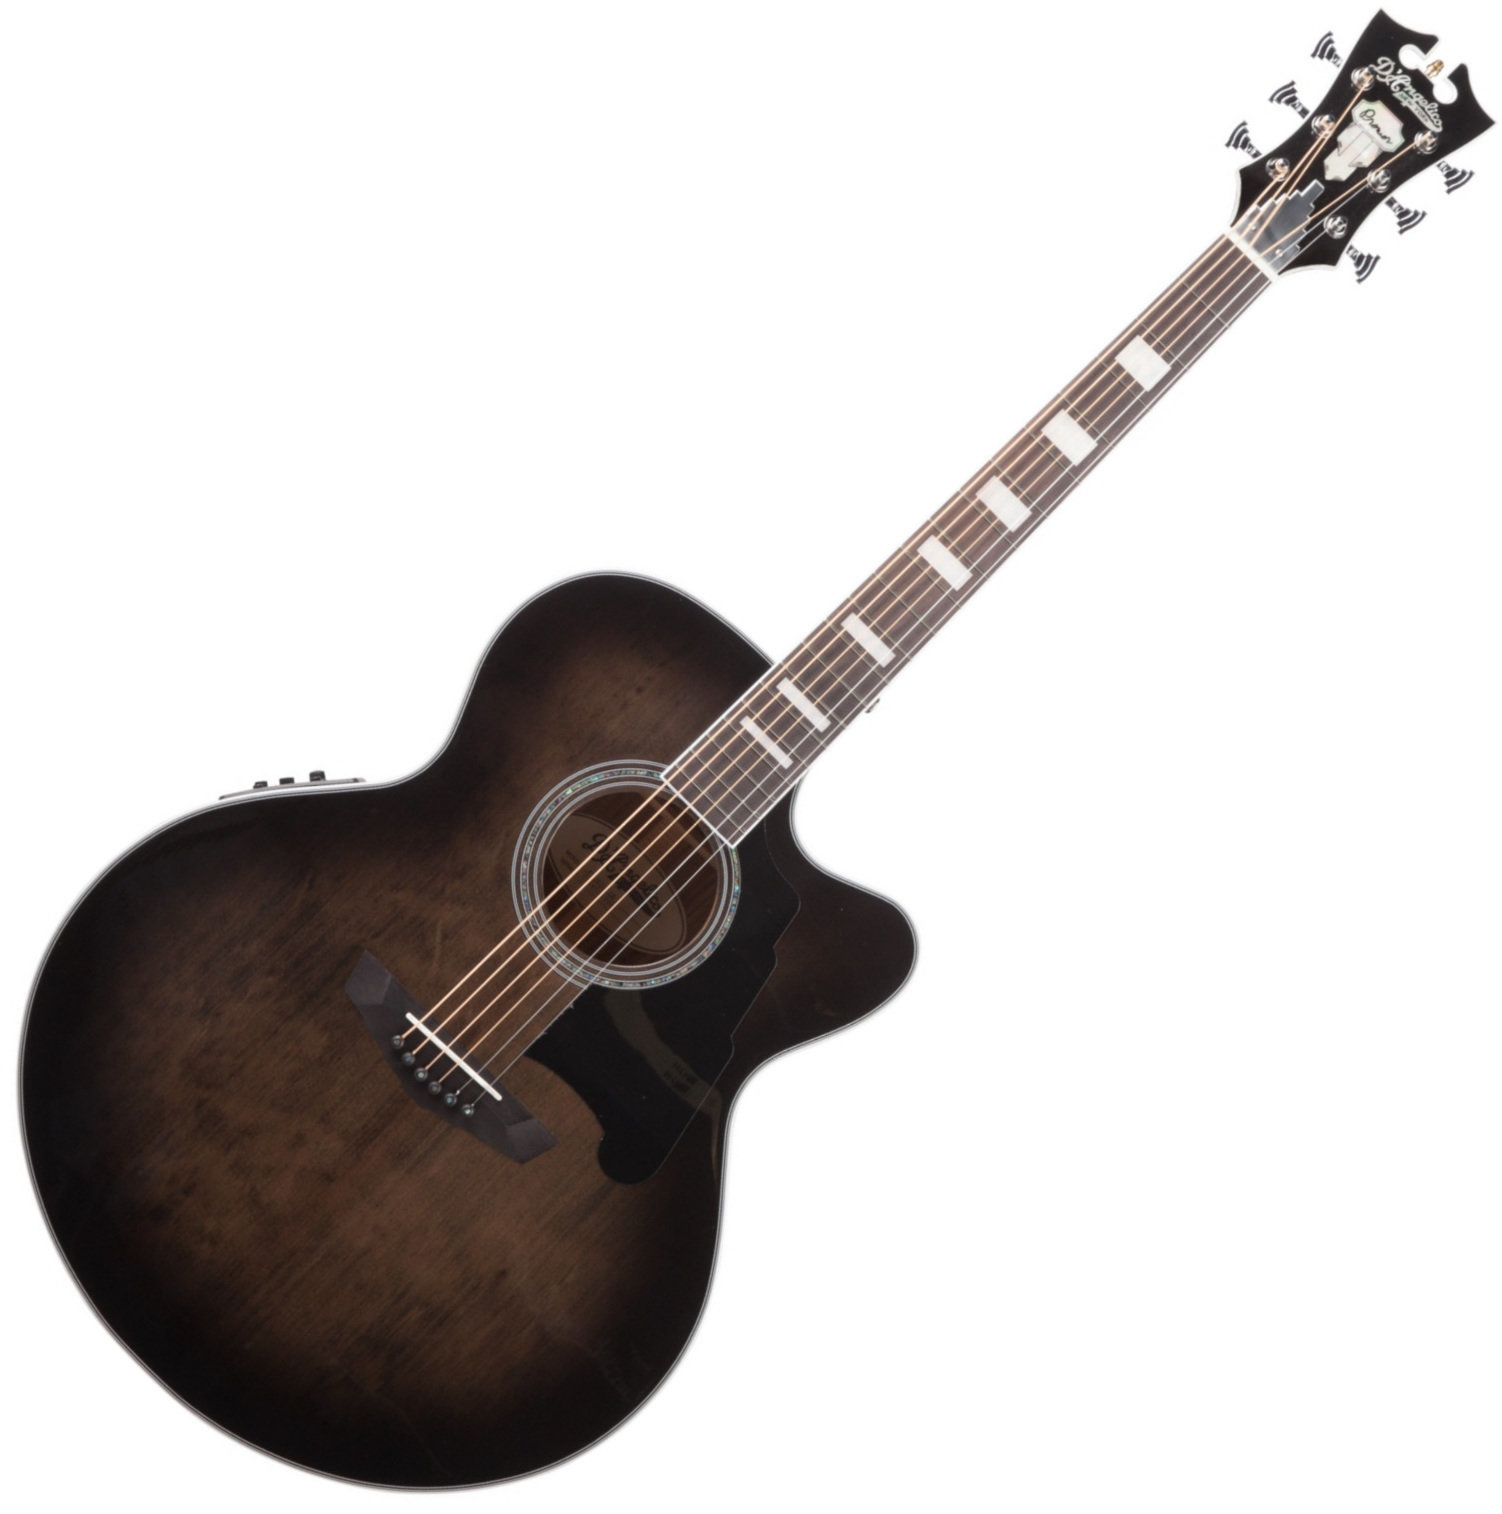 Jumbo elektro-akoestische gitaar D'Angelico Premier Madison Grey Black